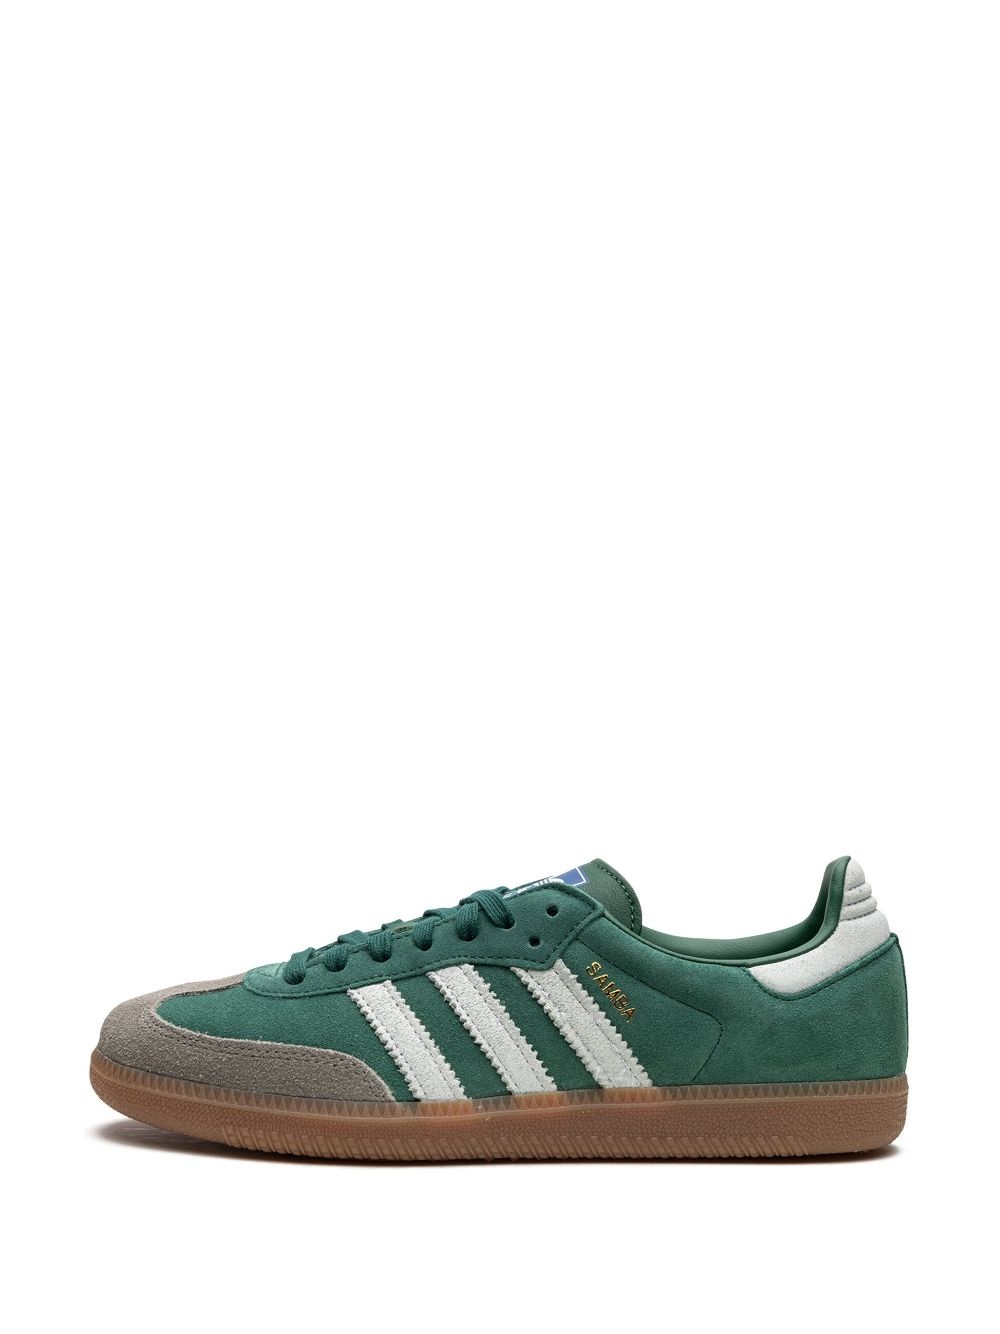 Samba OG "Court Green" sneakers - 5